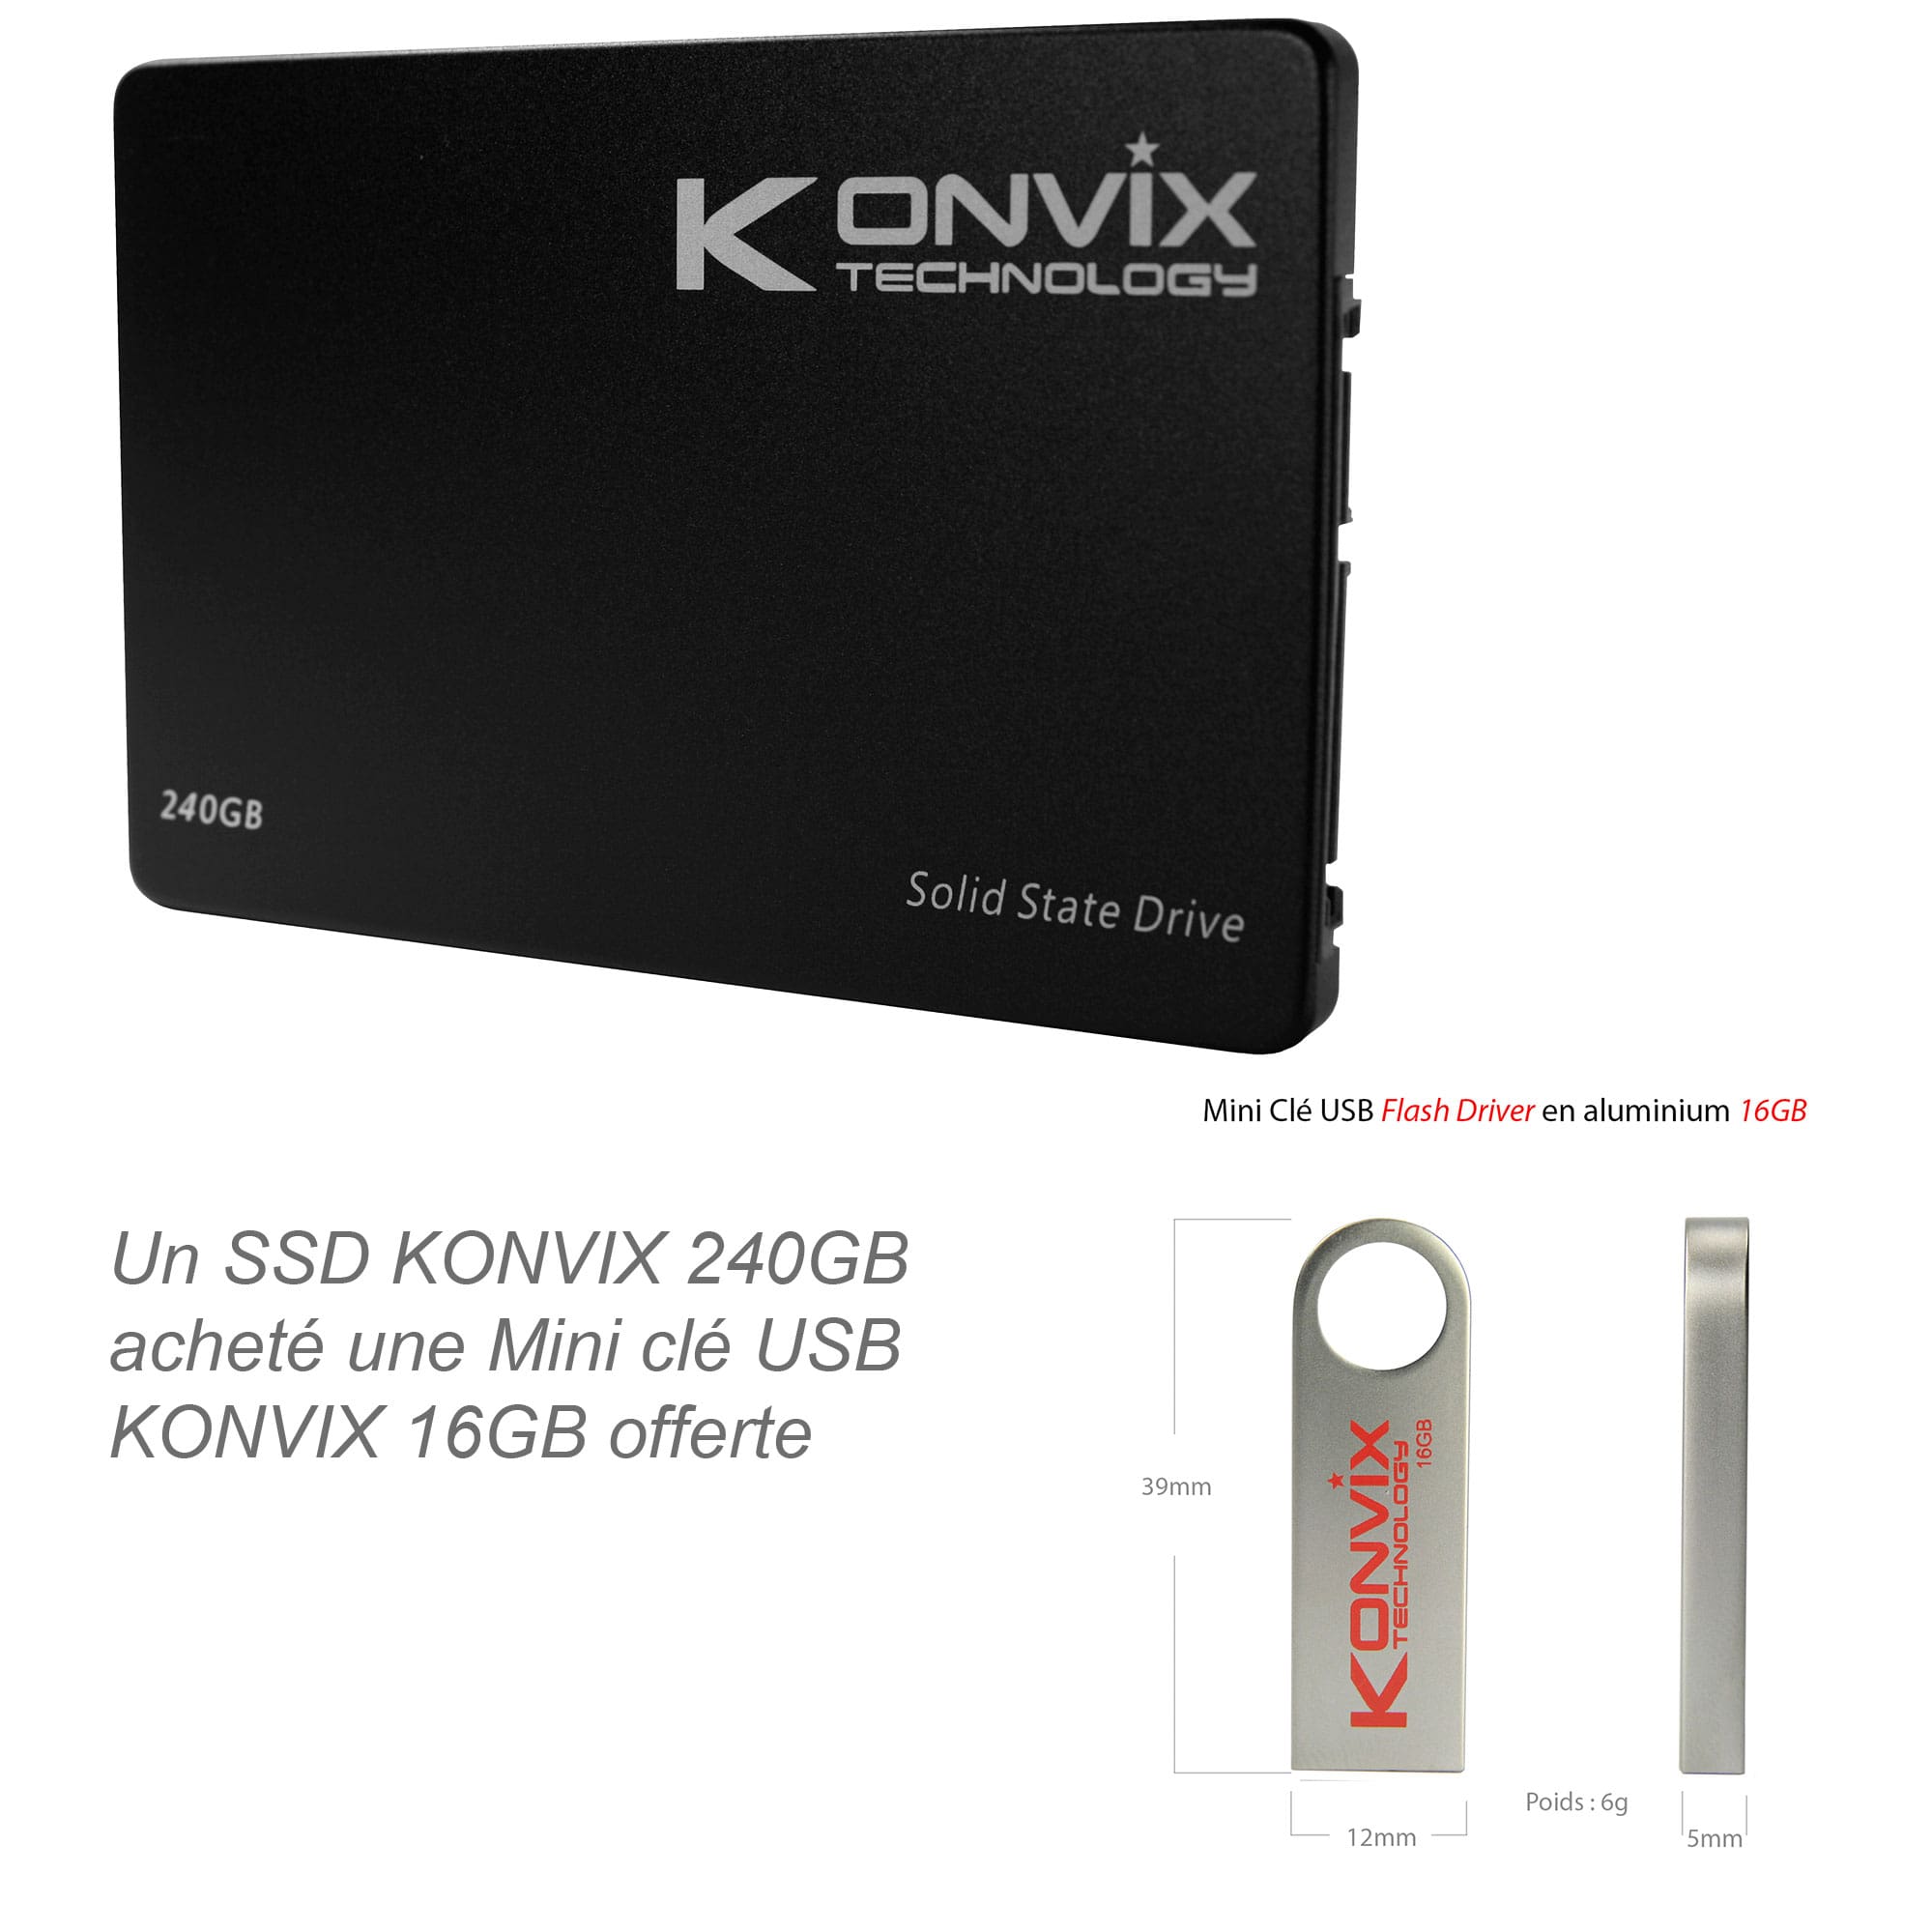 SSD Konvix 240GB SATA3 6Gb/s des technologies de stockage à l'état solide.